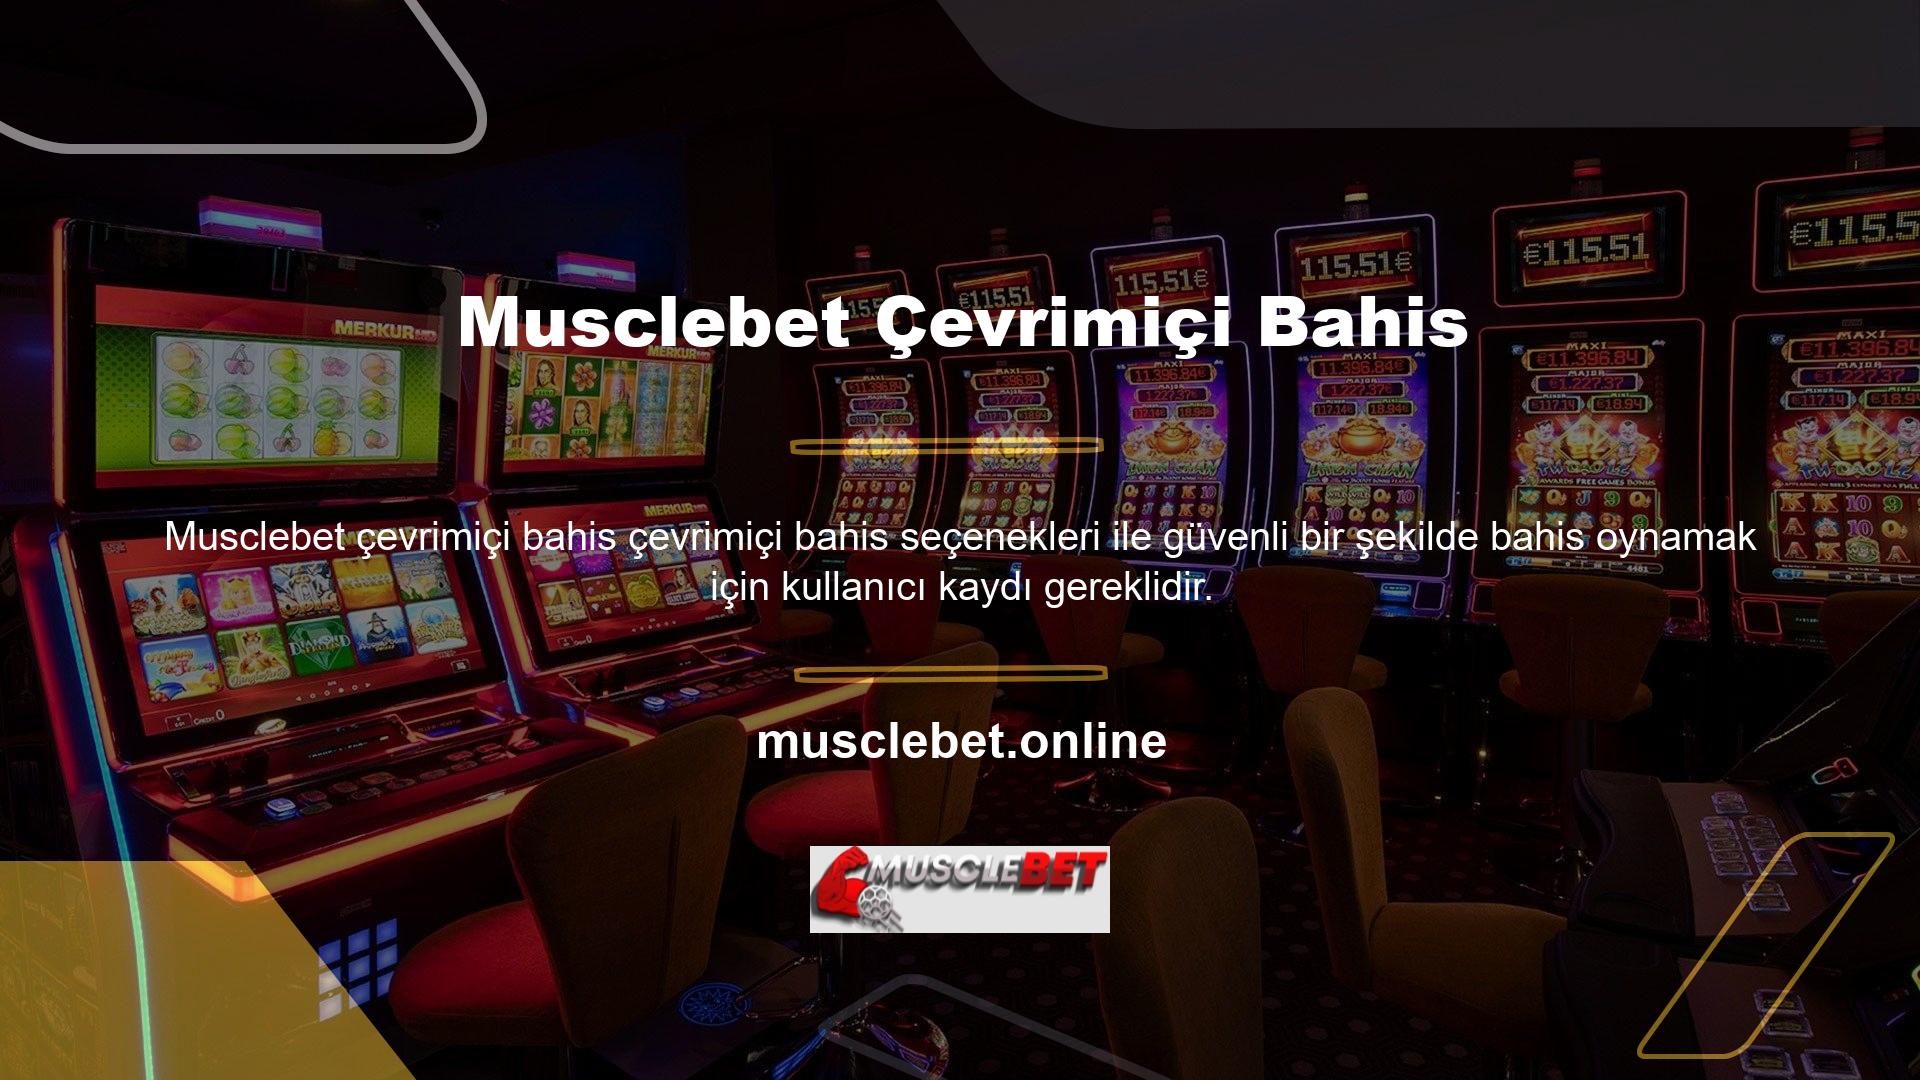 Musclebet, web sitesi üzerinden üyelik işlemleri için kullanıcılara hesap sunmaktadır